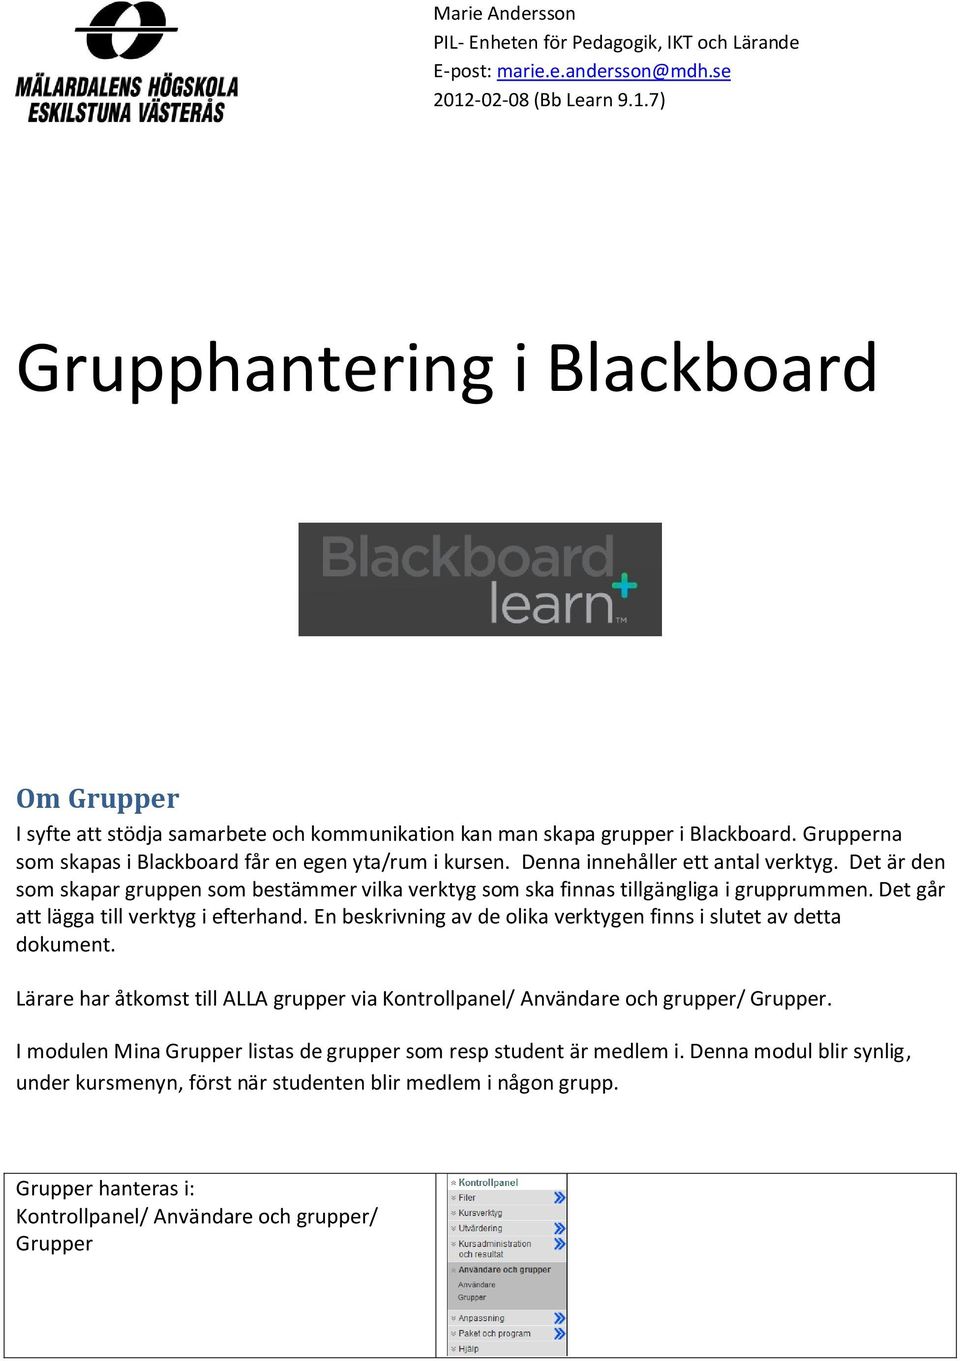 Grupperna som skapas i Blackboard får en egen yta/rum i kursen. Denna innehåller ett antal verktyg. Det är den som skapar gruppen som bestämmer vilka verktyg som ska finnas tillgängliga i grupprummen.